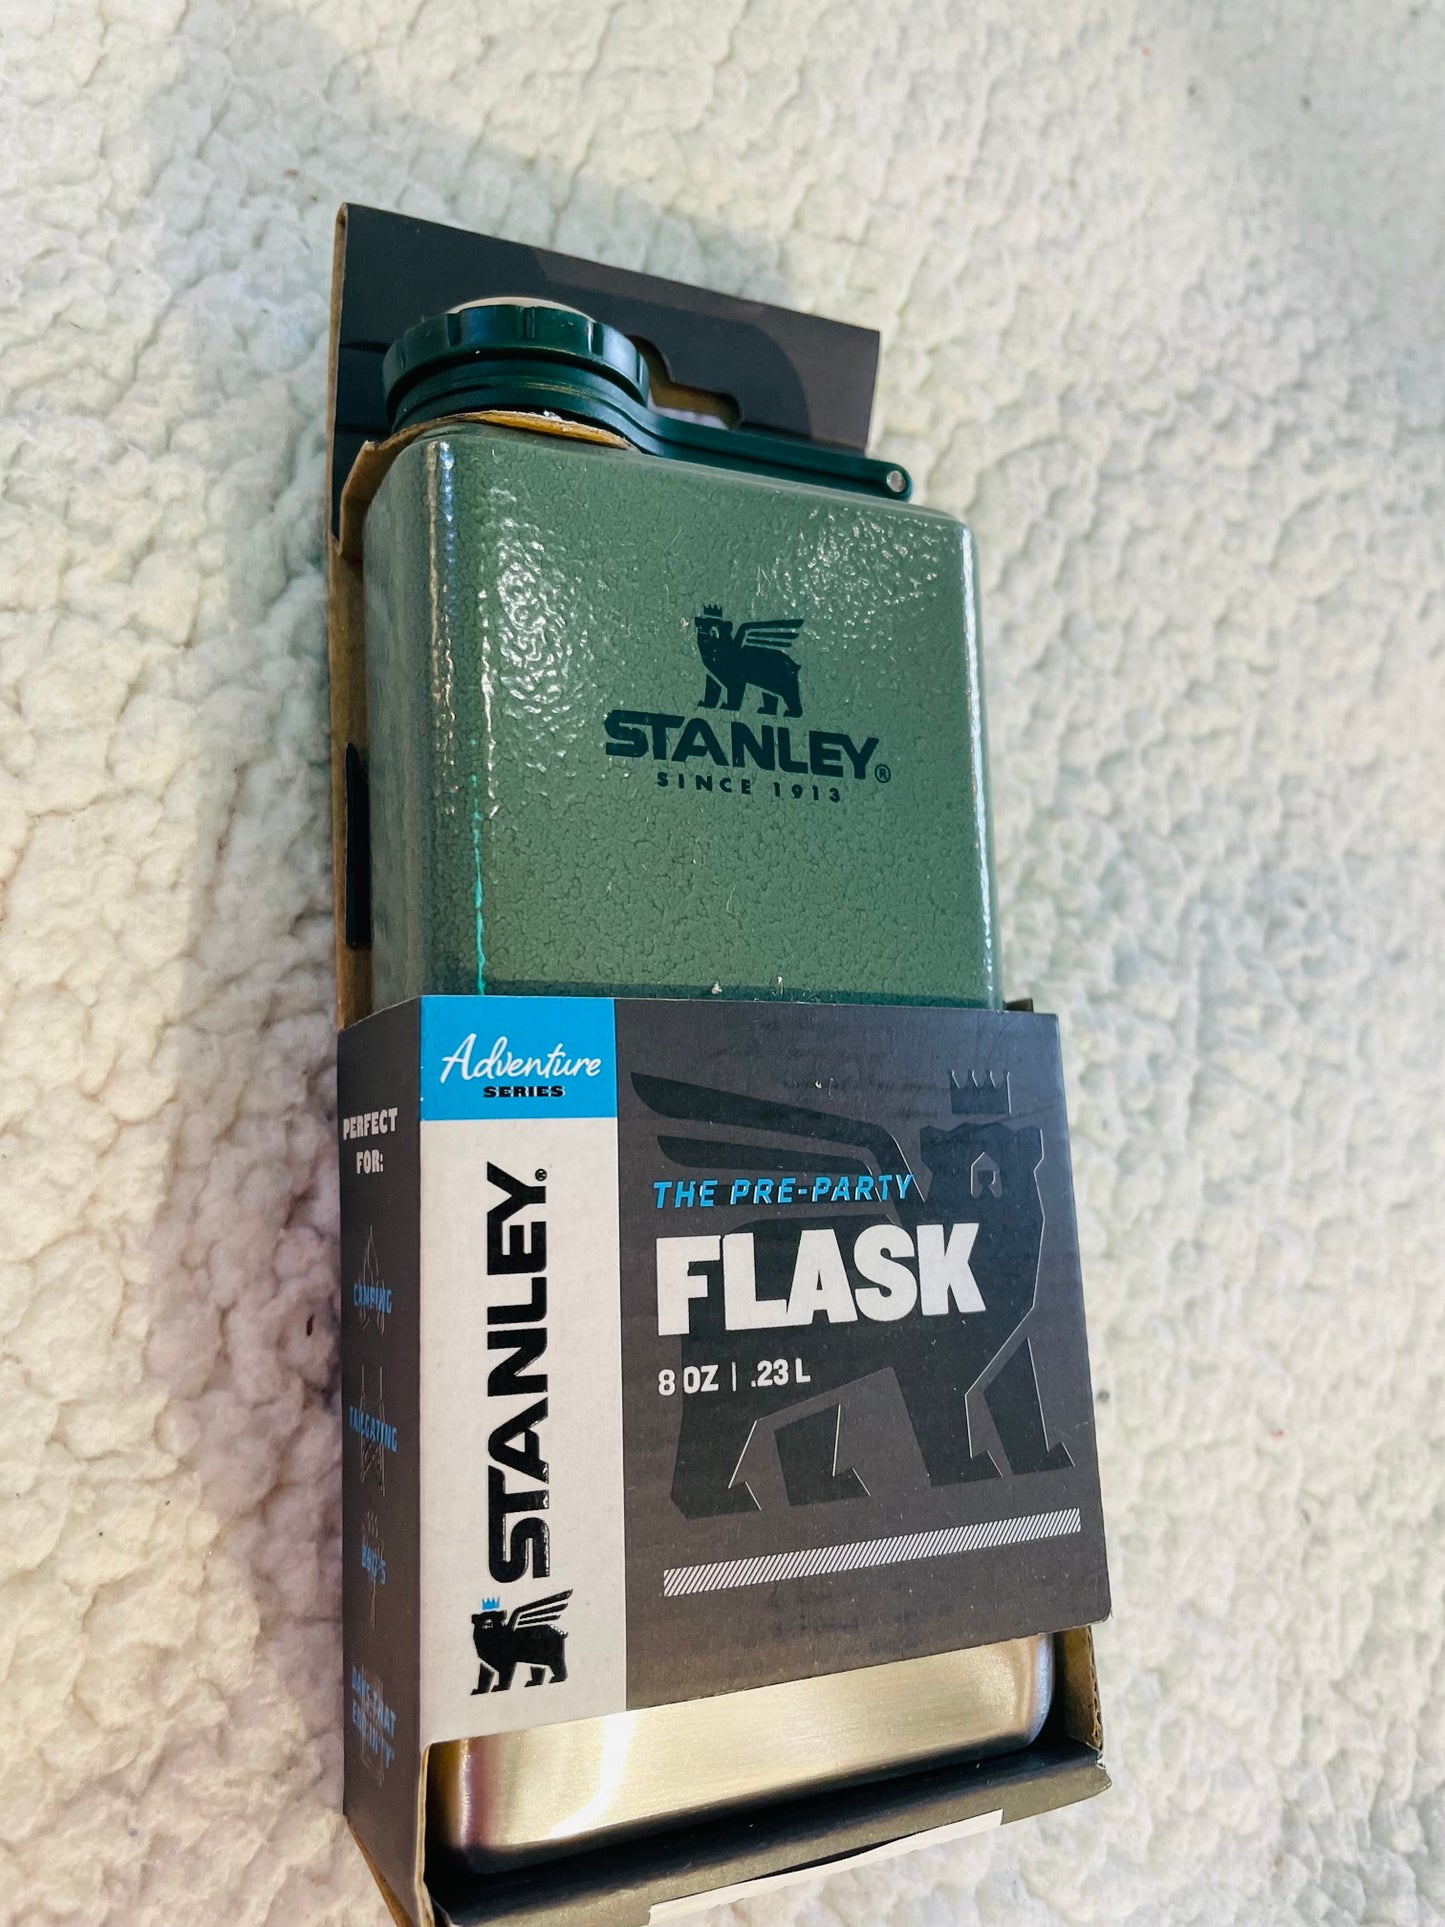 Stanley preparty flask bottle